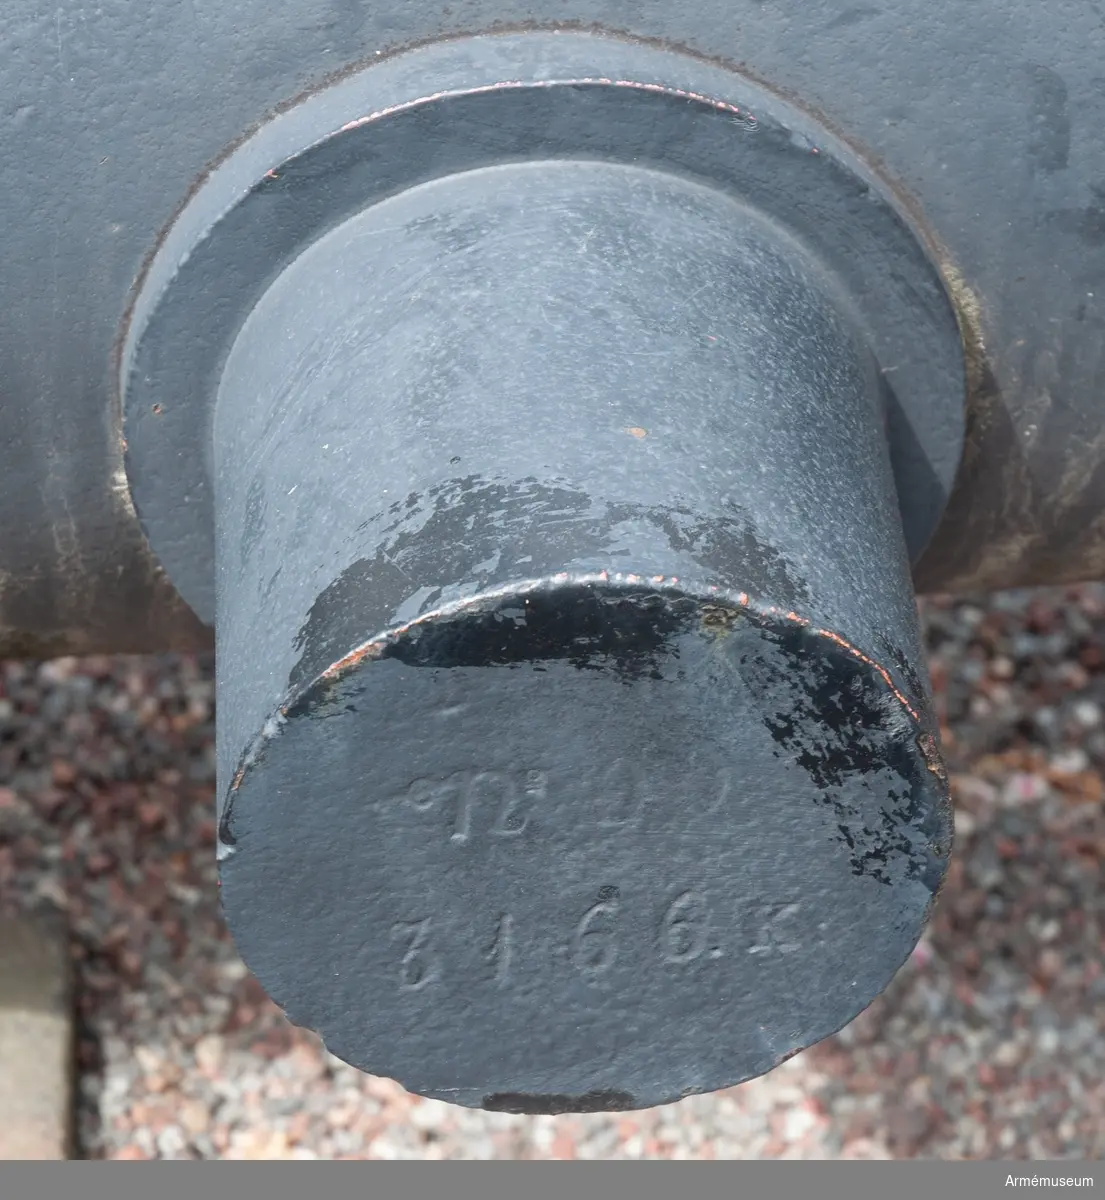 Eldrör till räfflad framladdningskanon, 1863, Wahrendorffs-Cavalli.
Tappens d: 162 mm. Höger tapp märkt "ÅKER 1863", vänster  "78=00 3166 K".